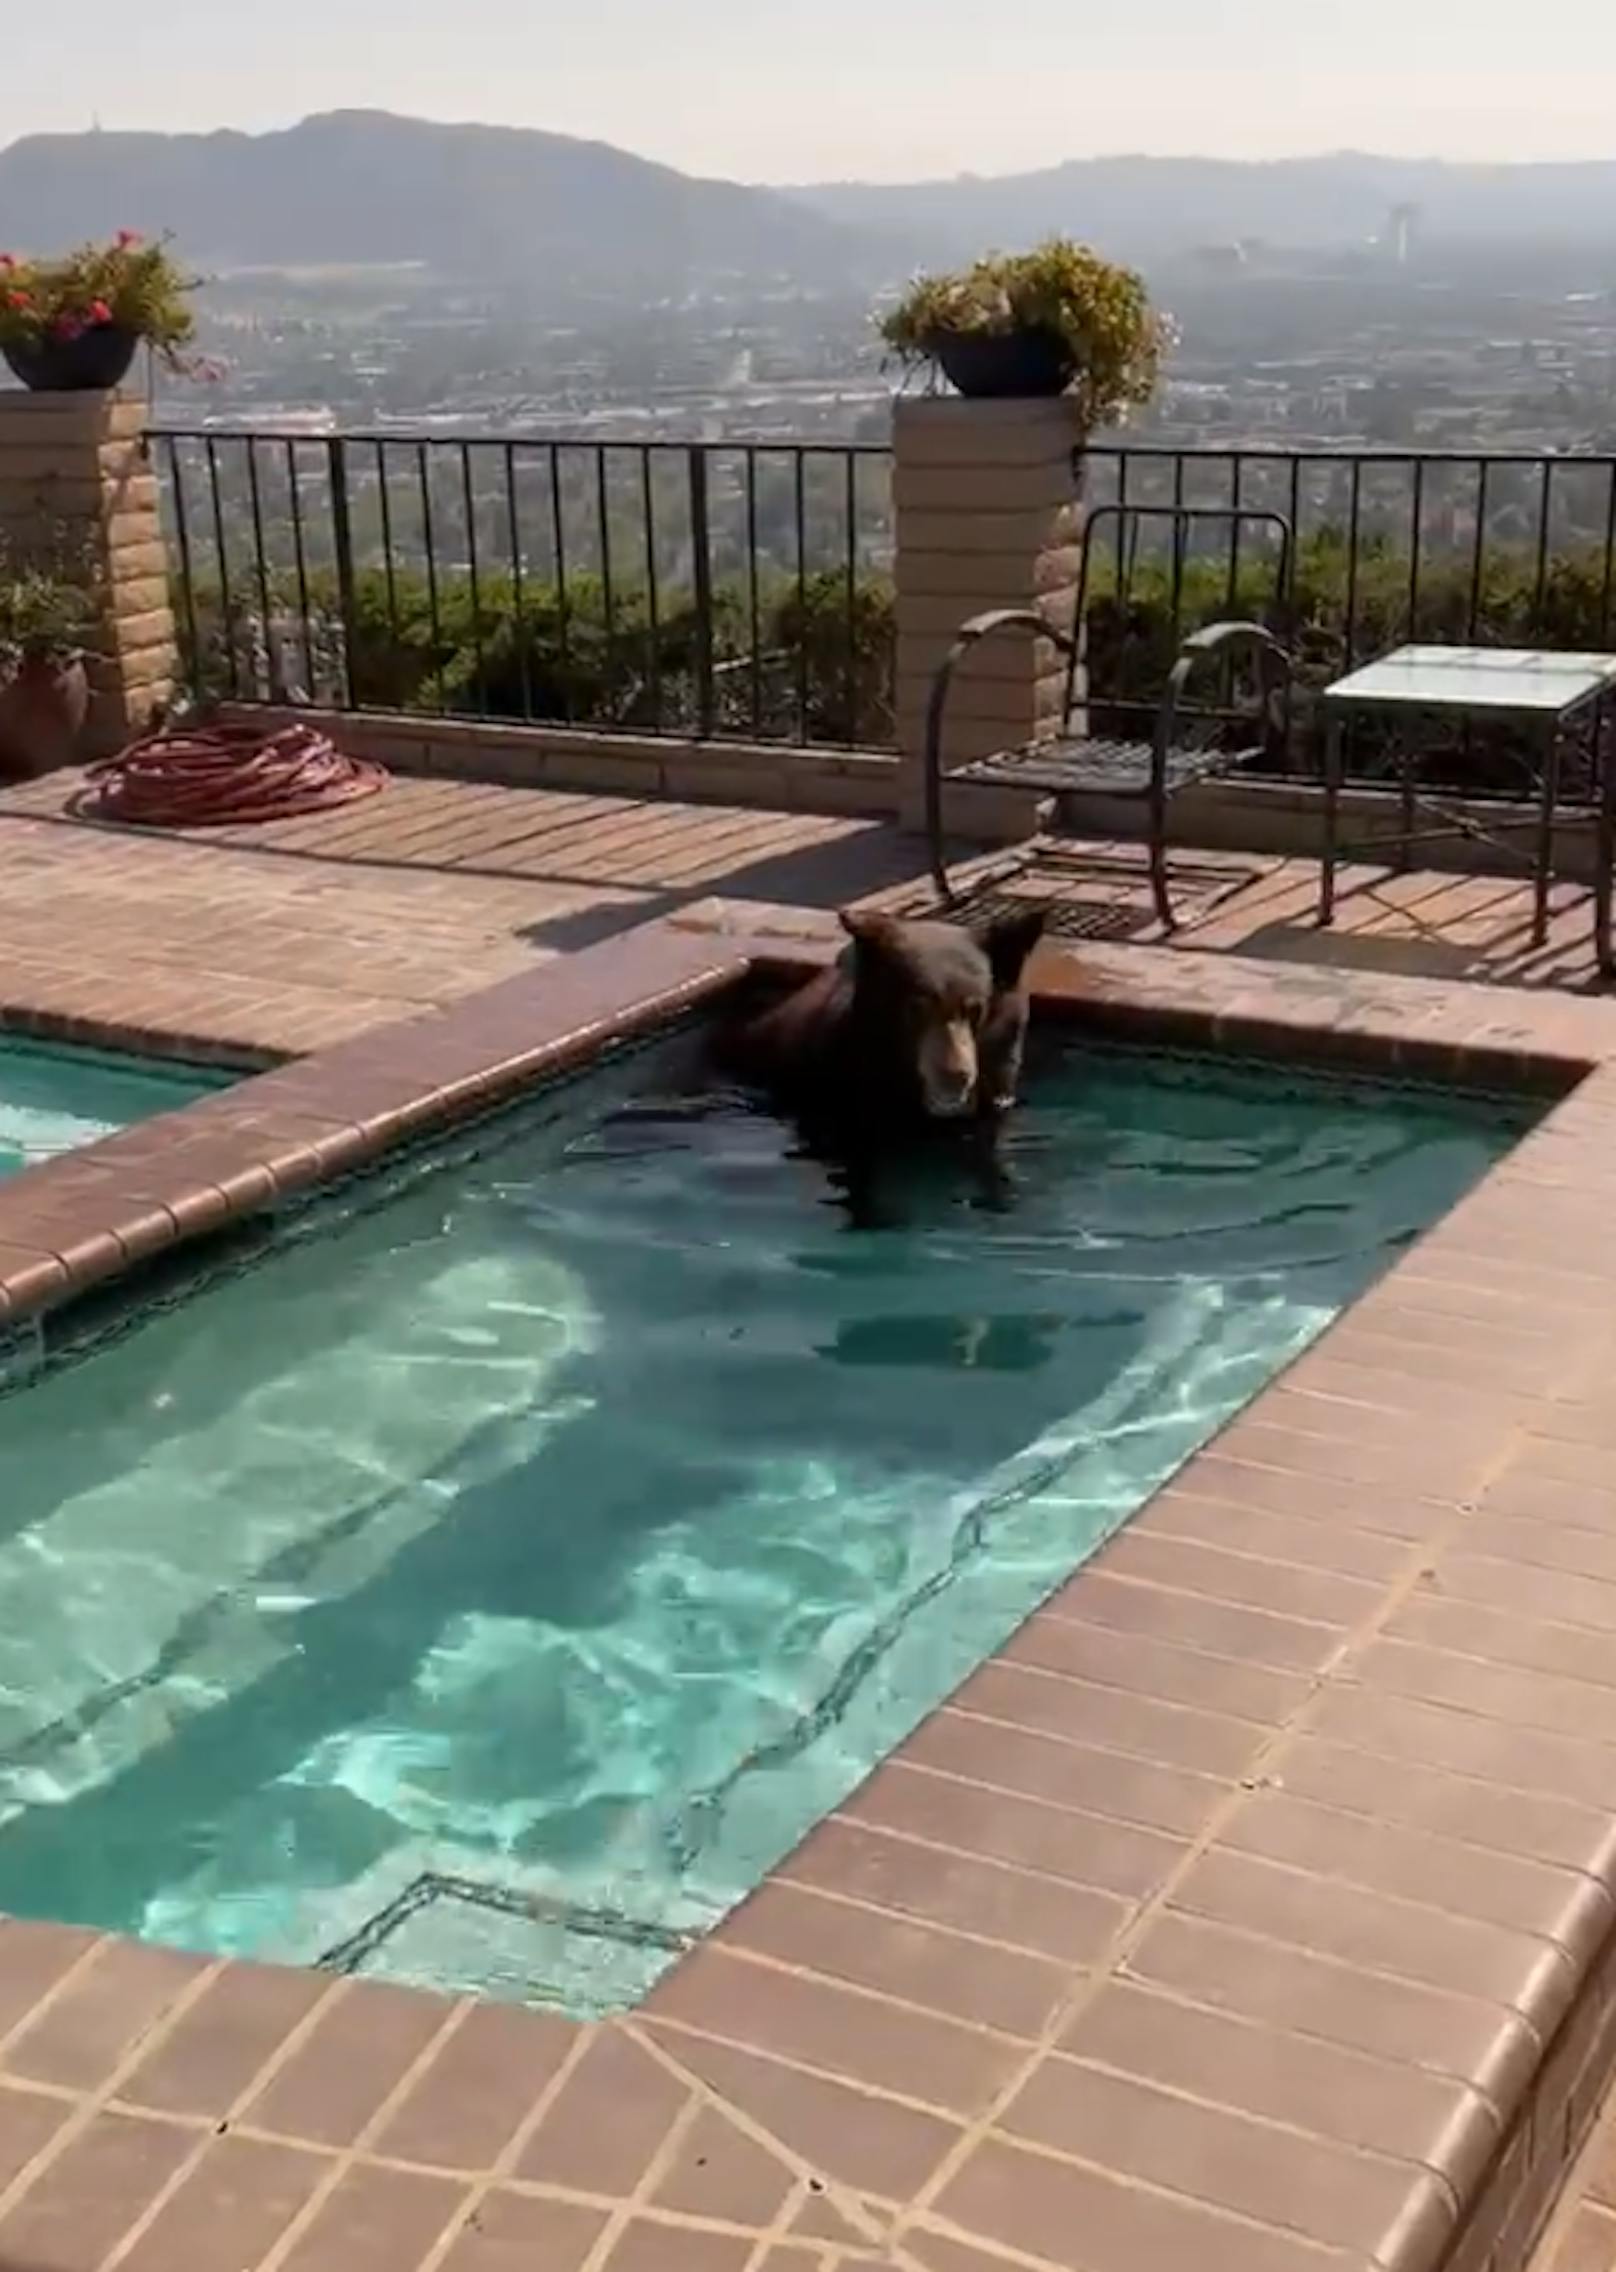 Bär flüchtet vor Hitzewelle in Pool